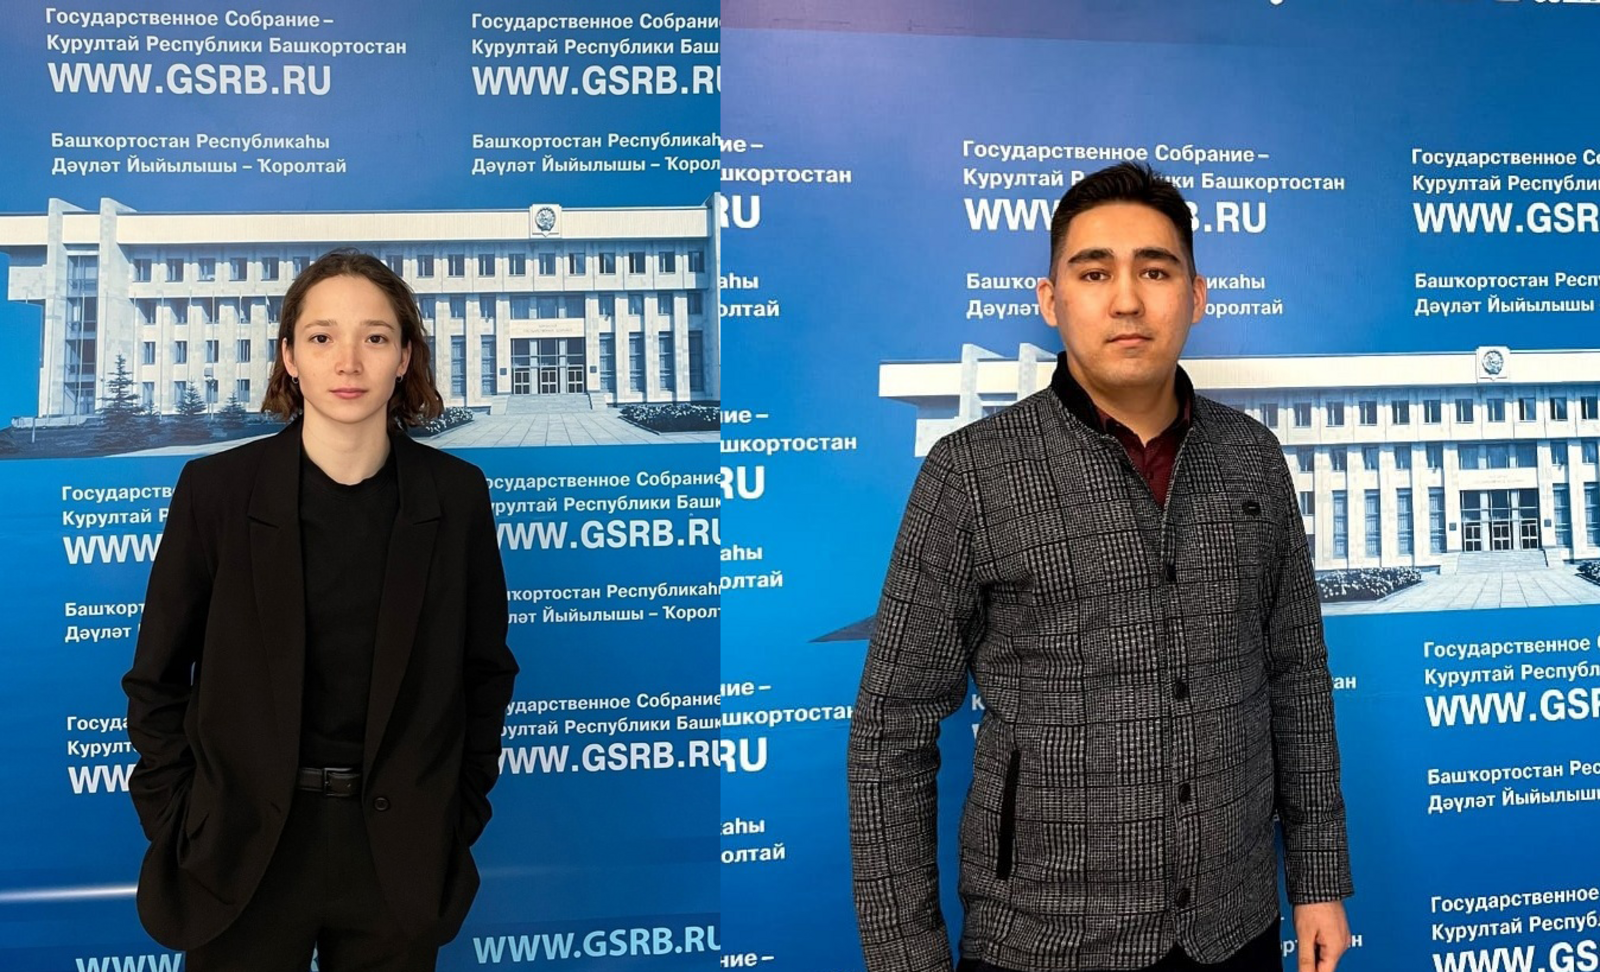 Сибайцы вошли в состав Молодежной общественной палаты седьмого созыва при Госсобрании Башкортостана